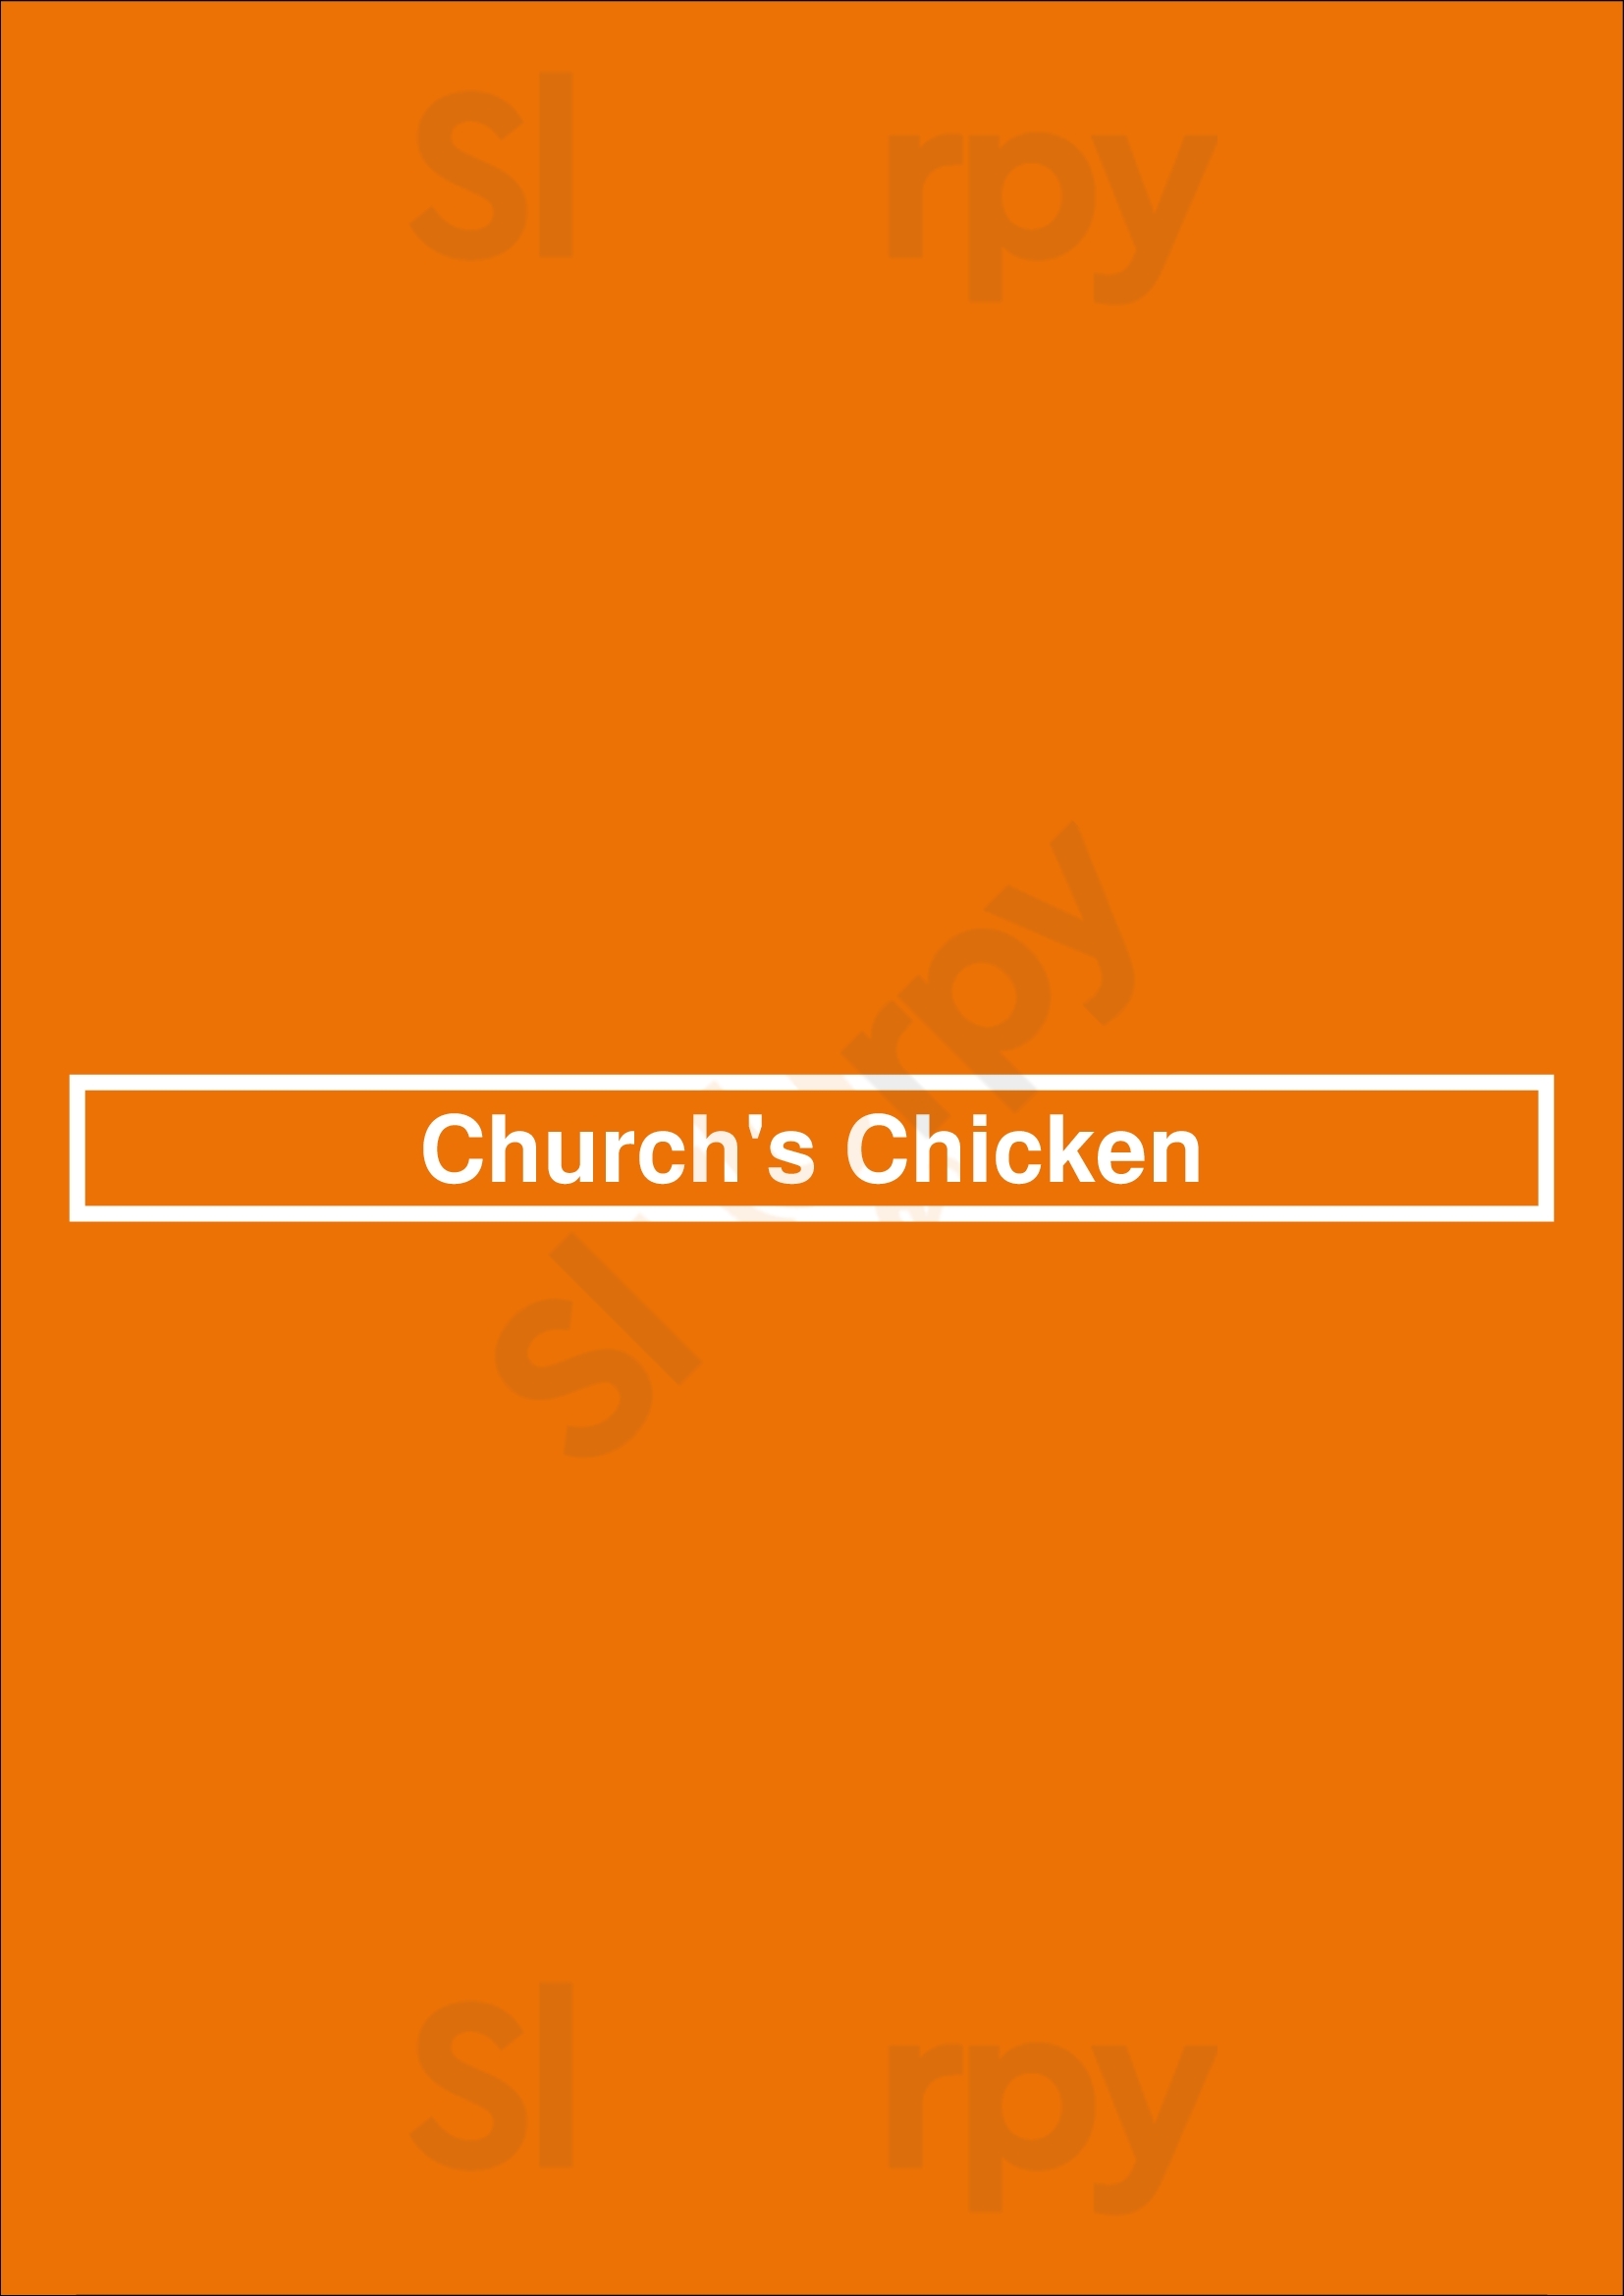 Church's Texas Chicken Los Angeles Menu - 1